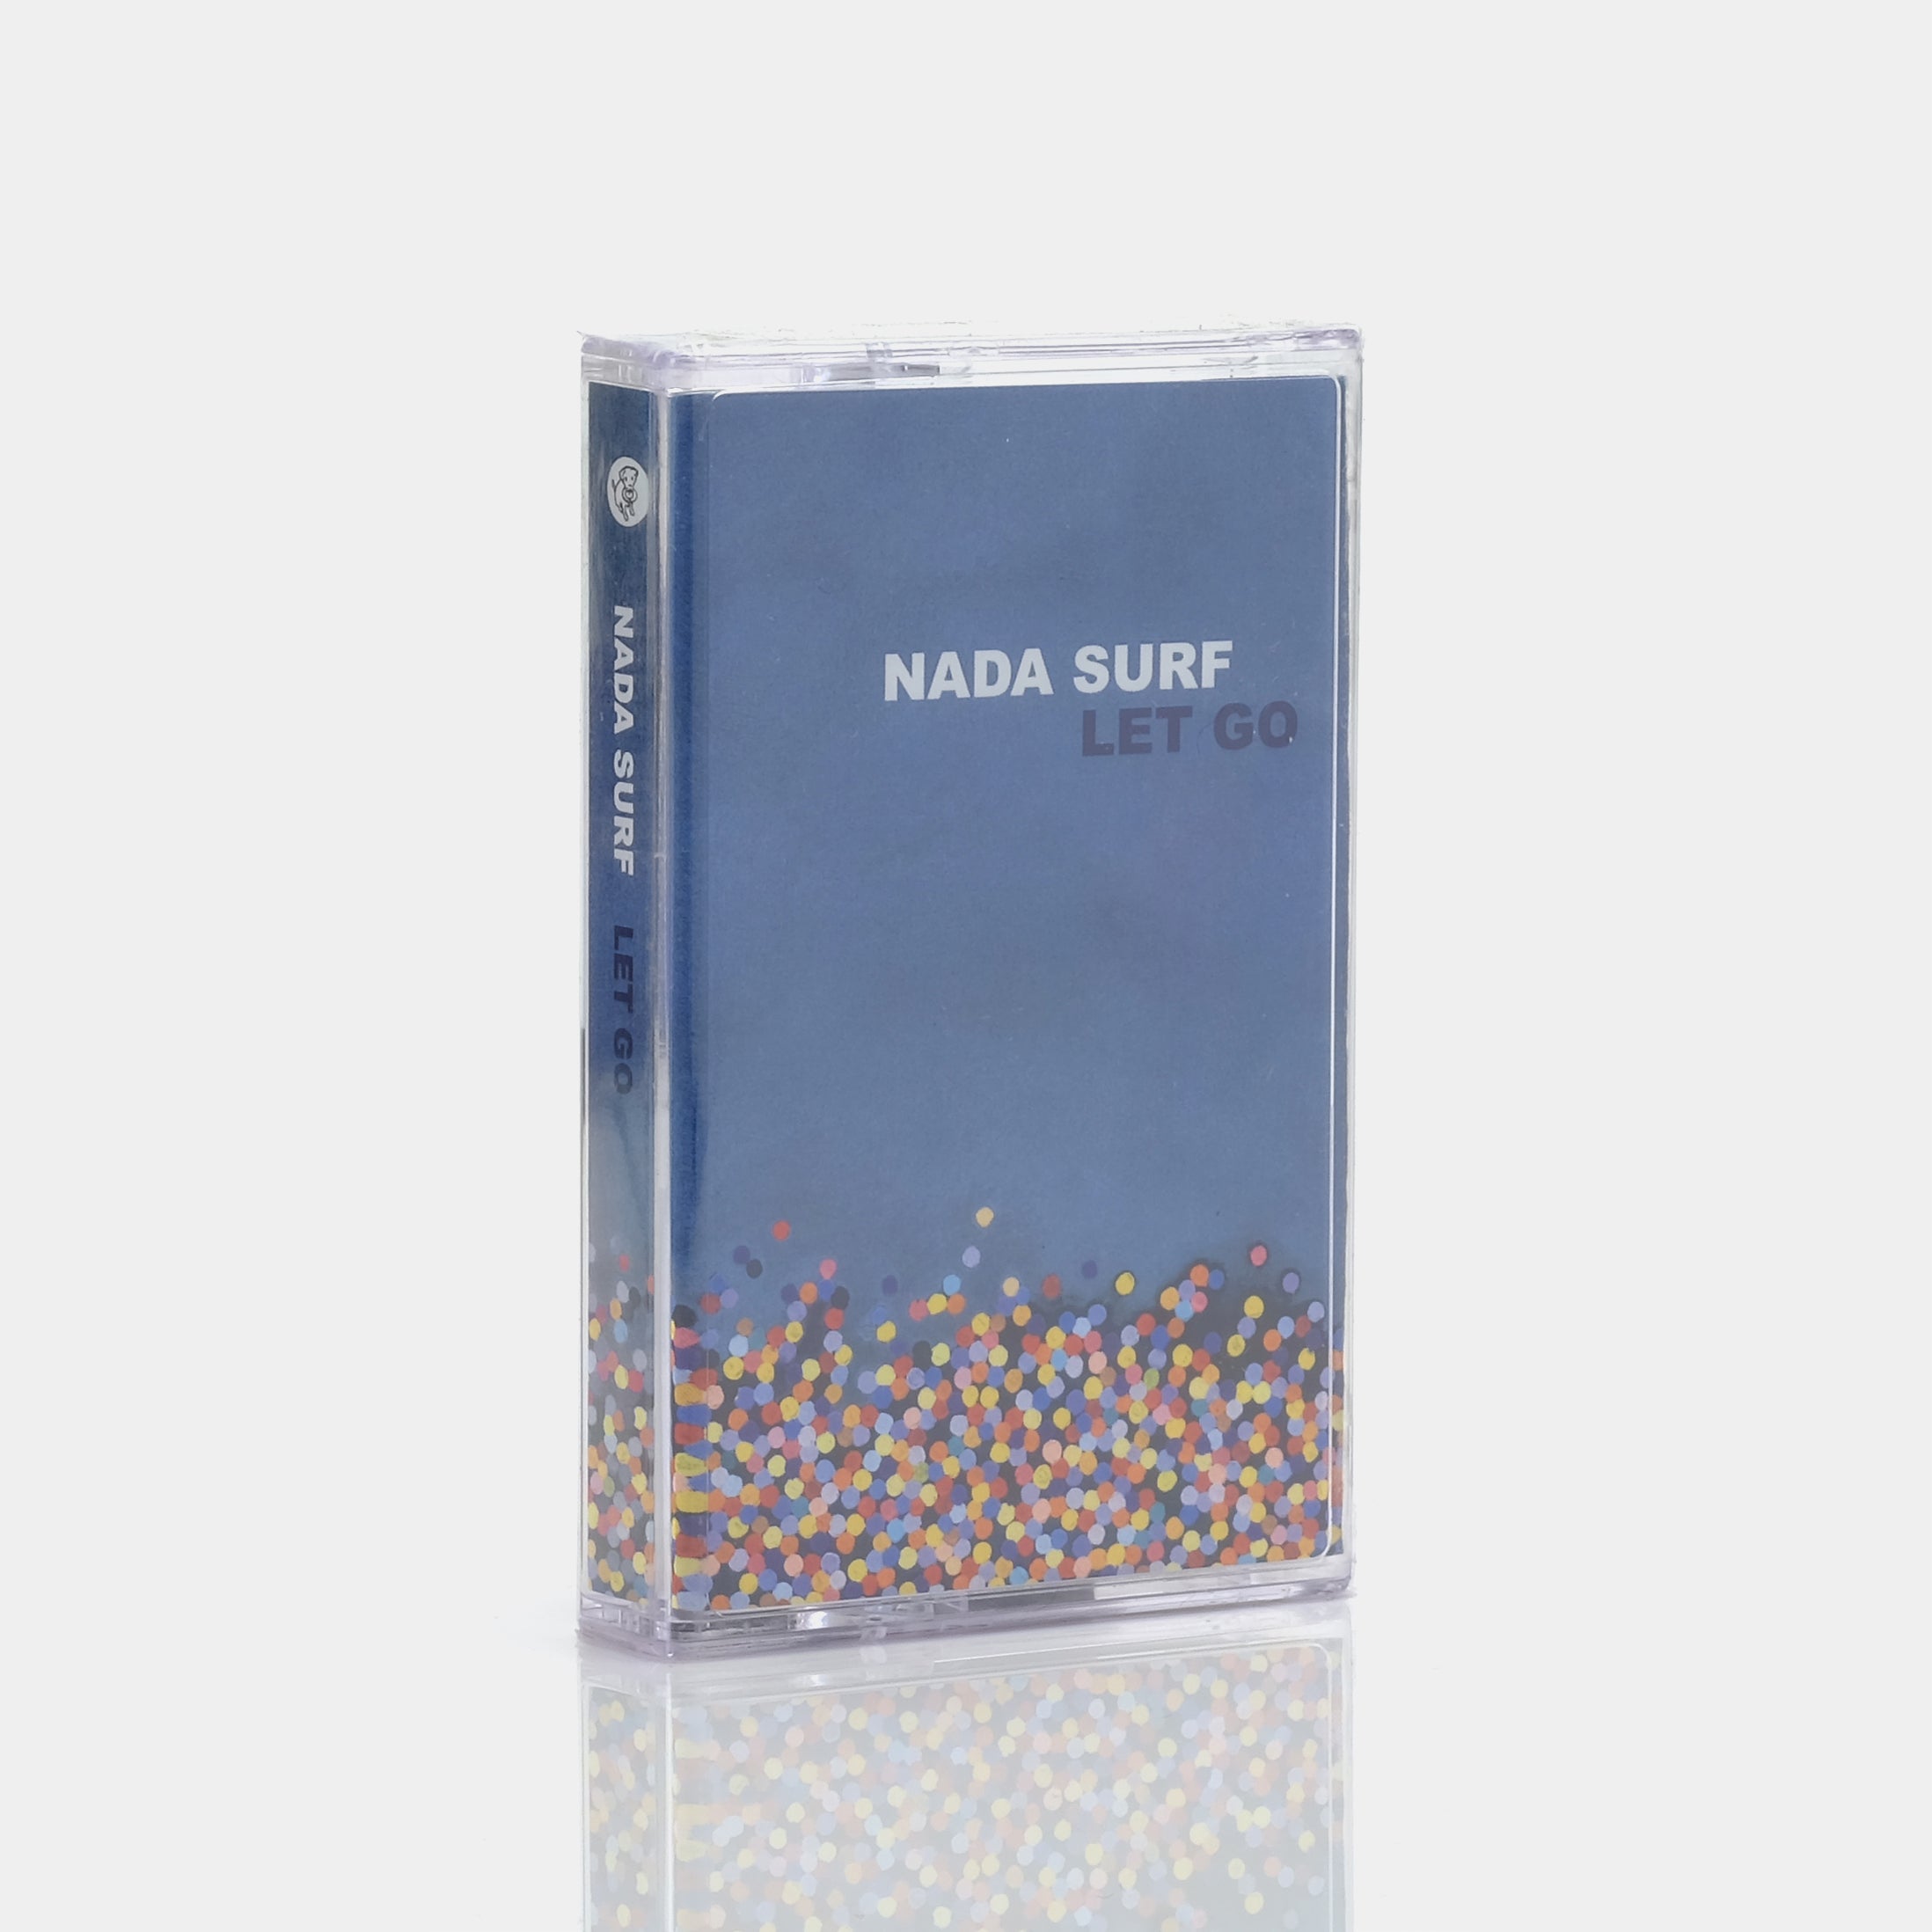 Nada Surf - Let Go Cassette Tape